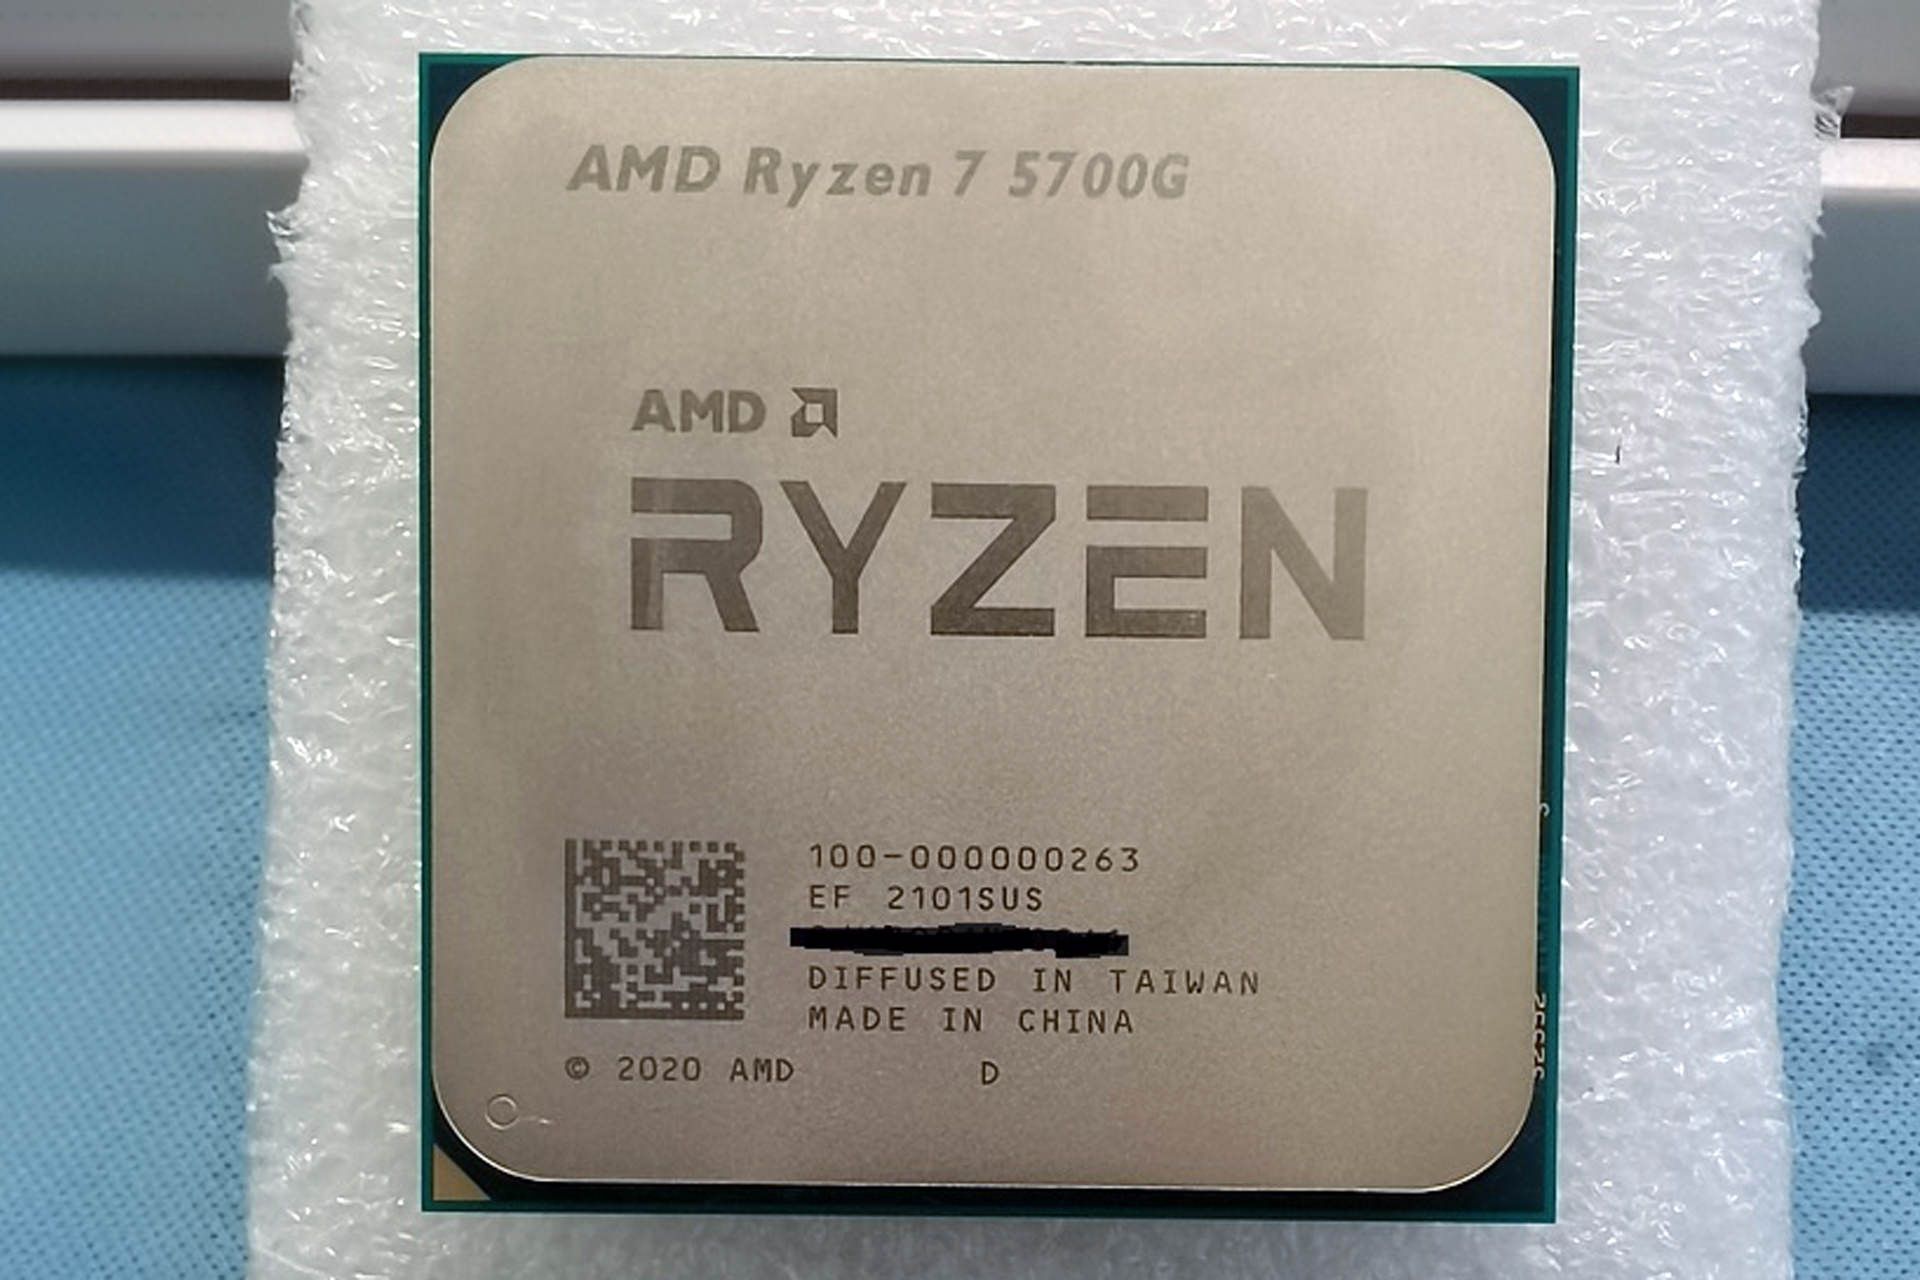 مرجع متخصصين ايران تصوير فاش شده پردازنده AMD Ryzen 7 5700G از نماي جلو در دنياي واقعي